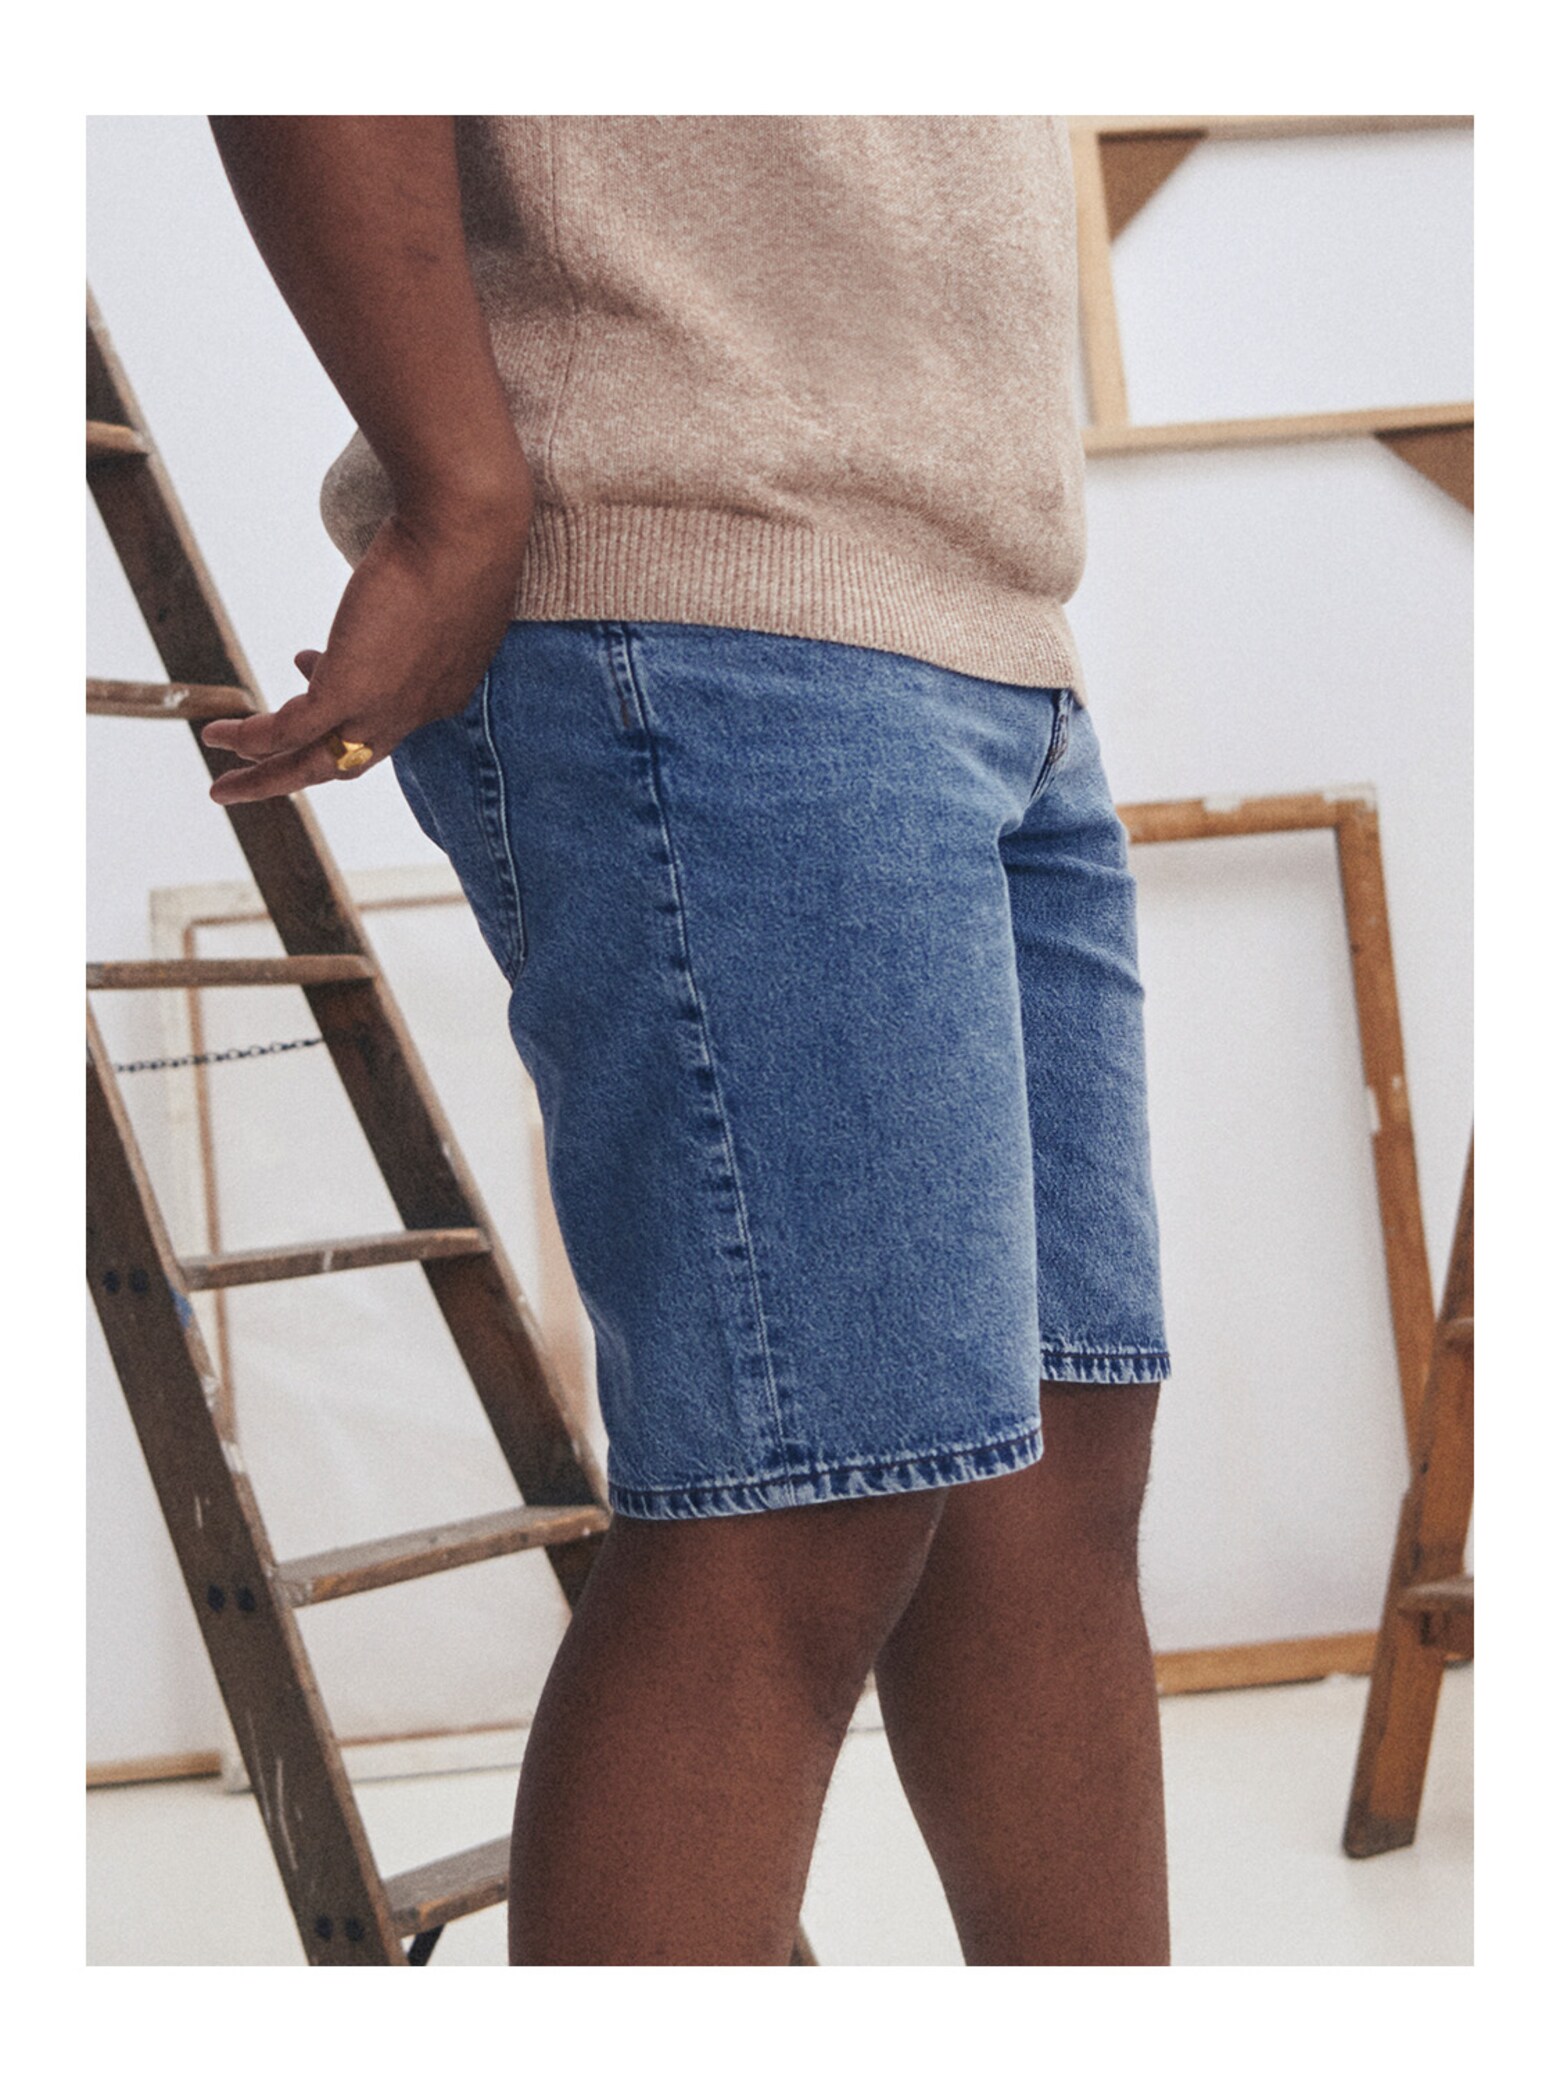 Stylische Kurzfassung Jeansshort-Styles